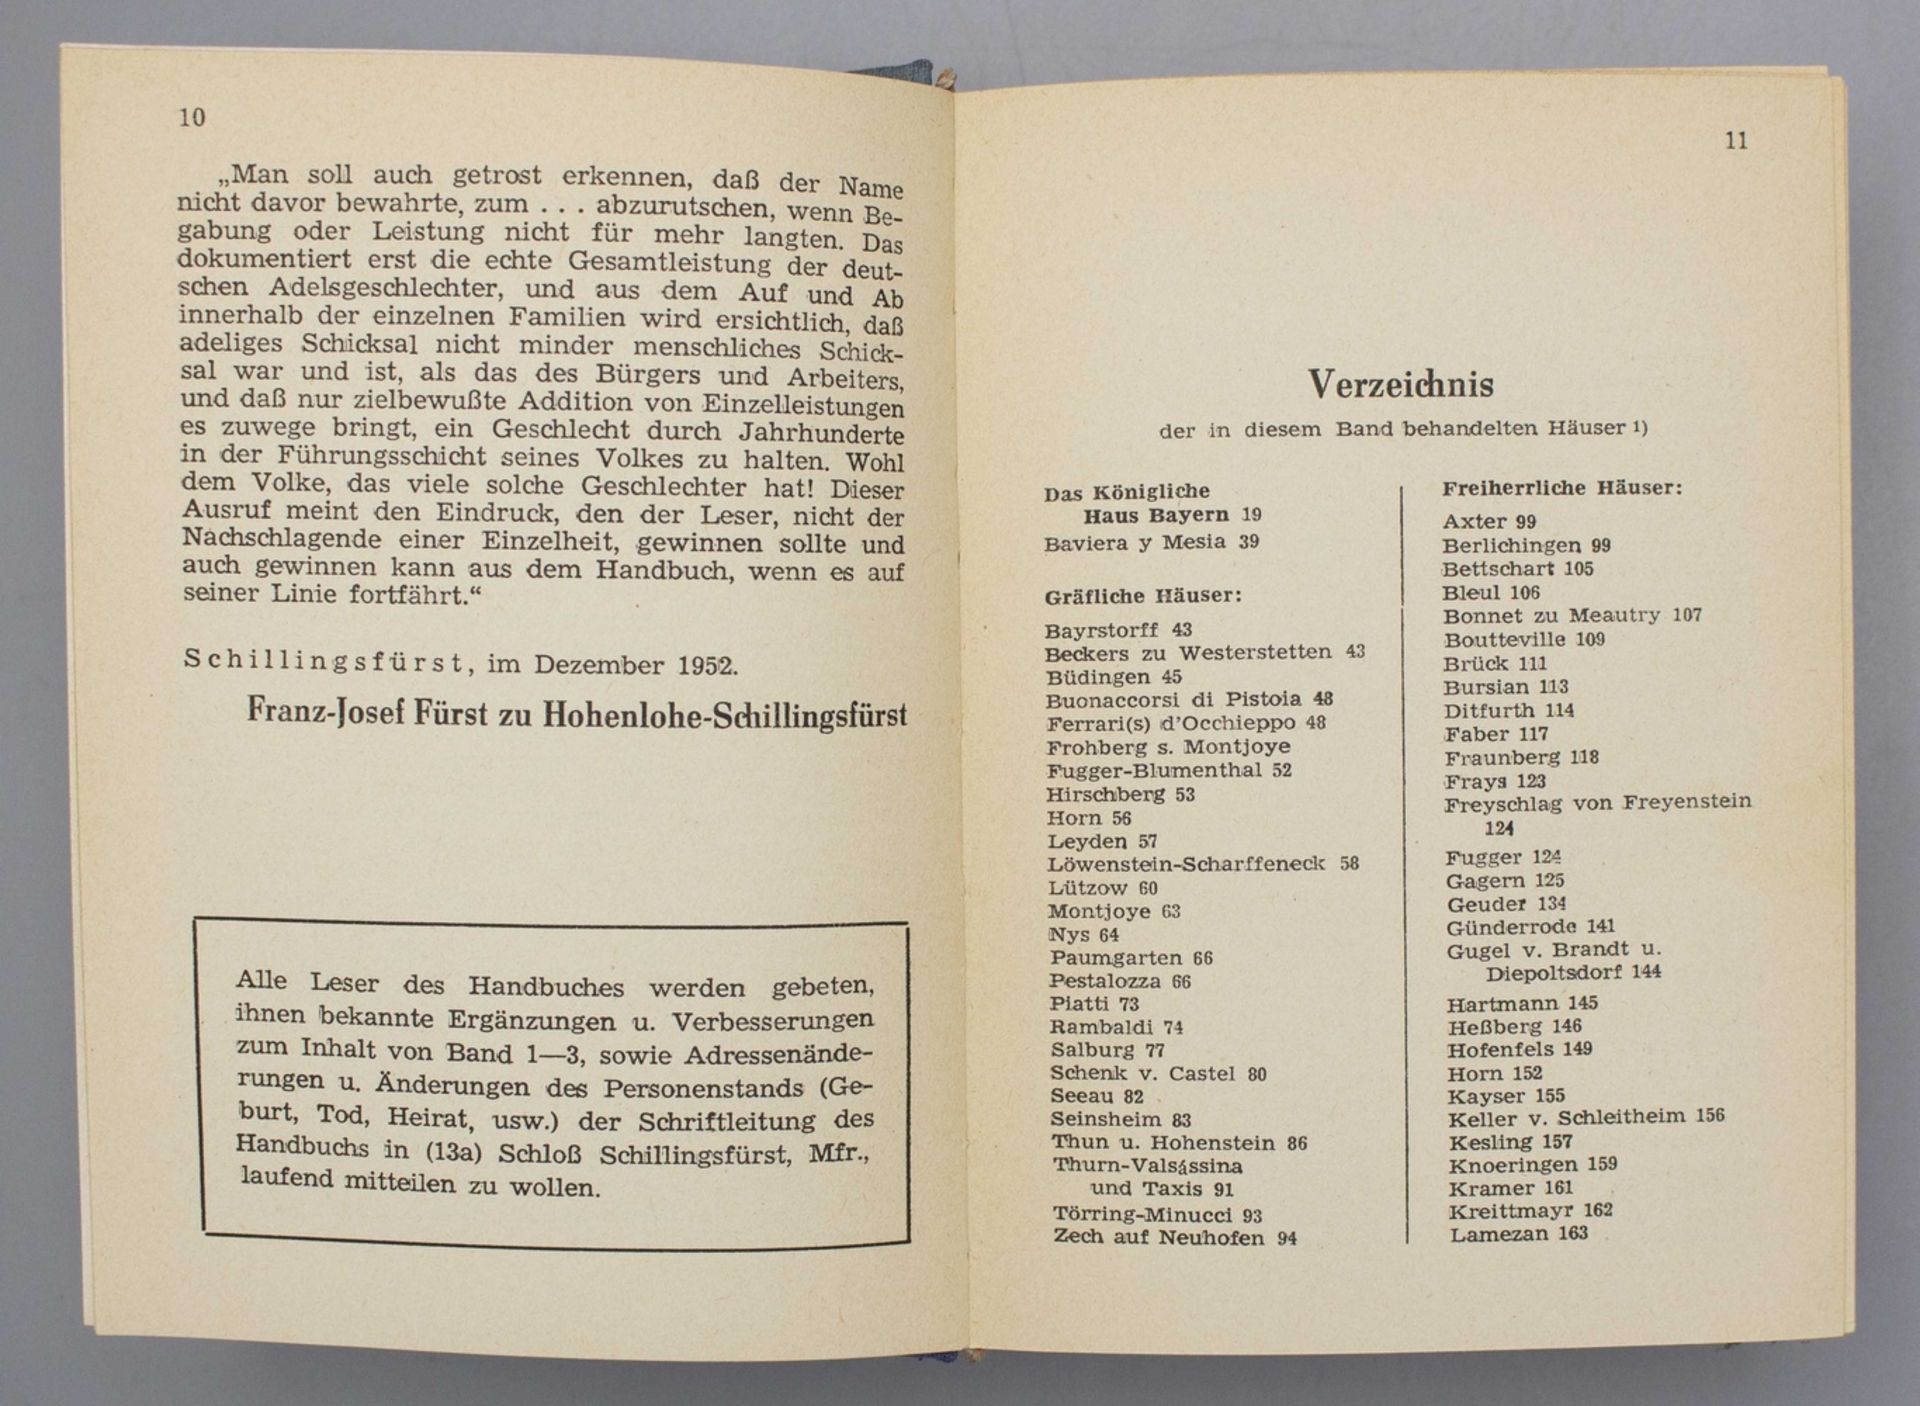 Genealogisches Handbuch des in Bayern immatrikulierten Adels, 1950-1952 - Image 6 of 6